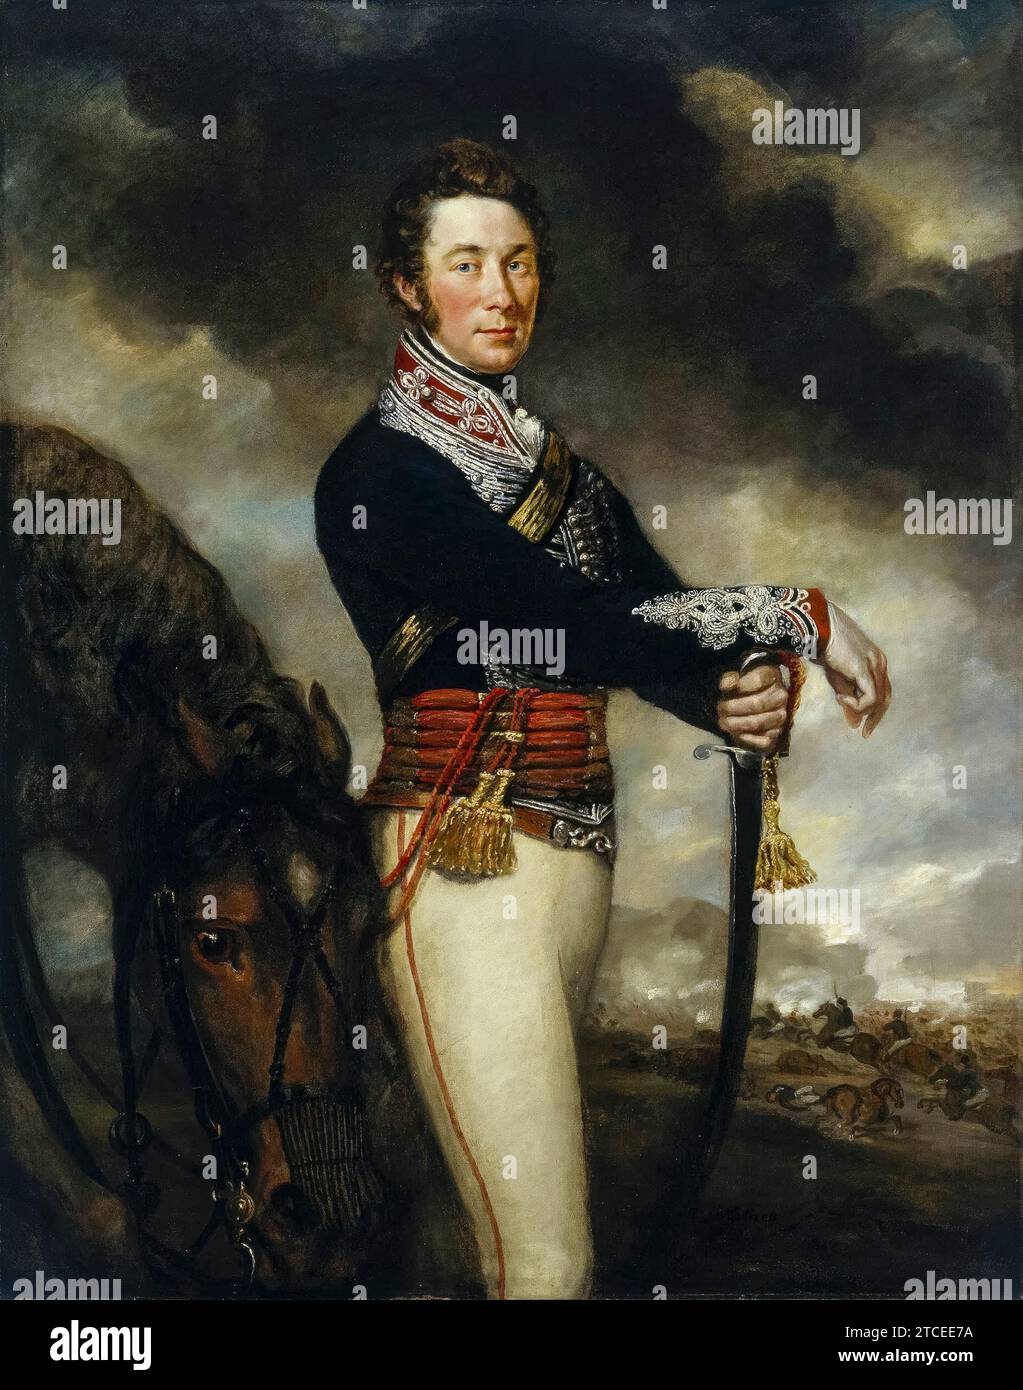 Capitano Peter Hawker, dei, 14th Light Dragoons, ritratto dipinto ad olio su tela di James Northcote, 1812 Foto Stock